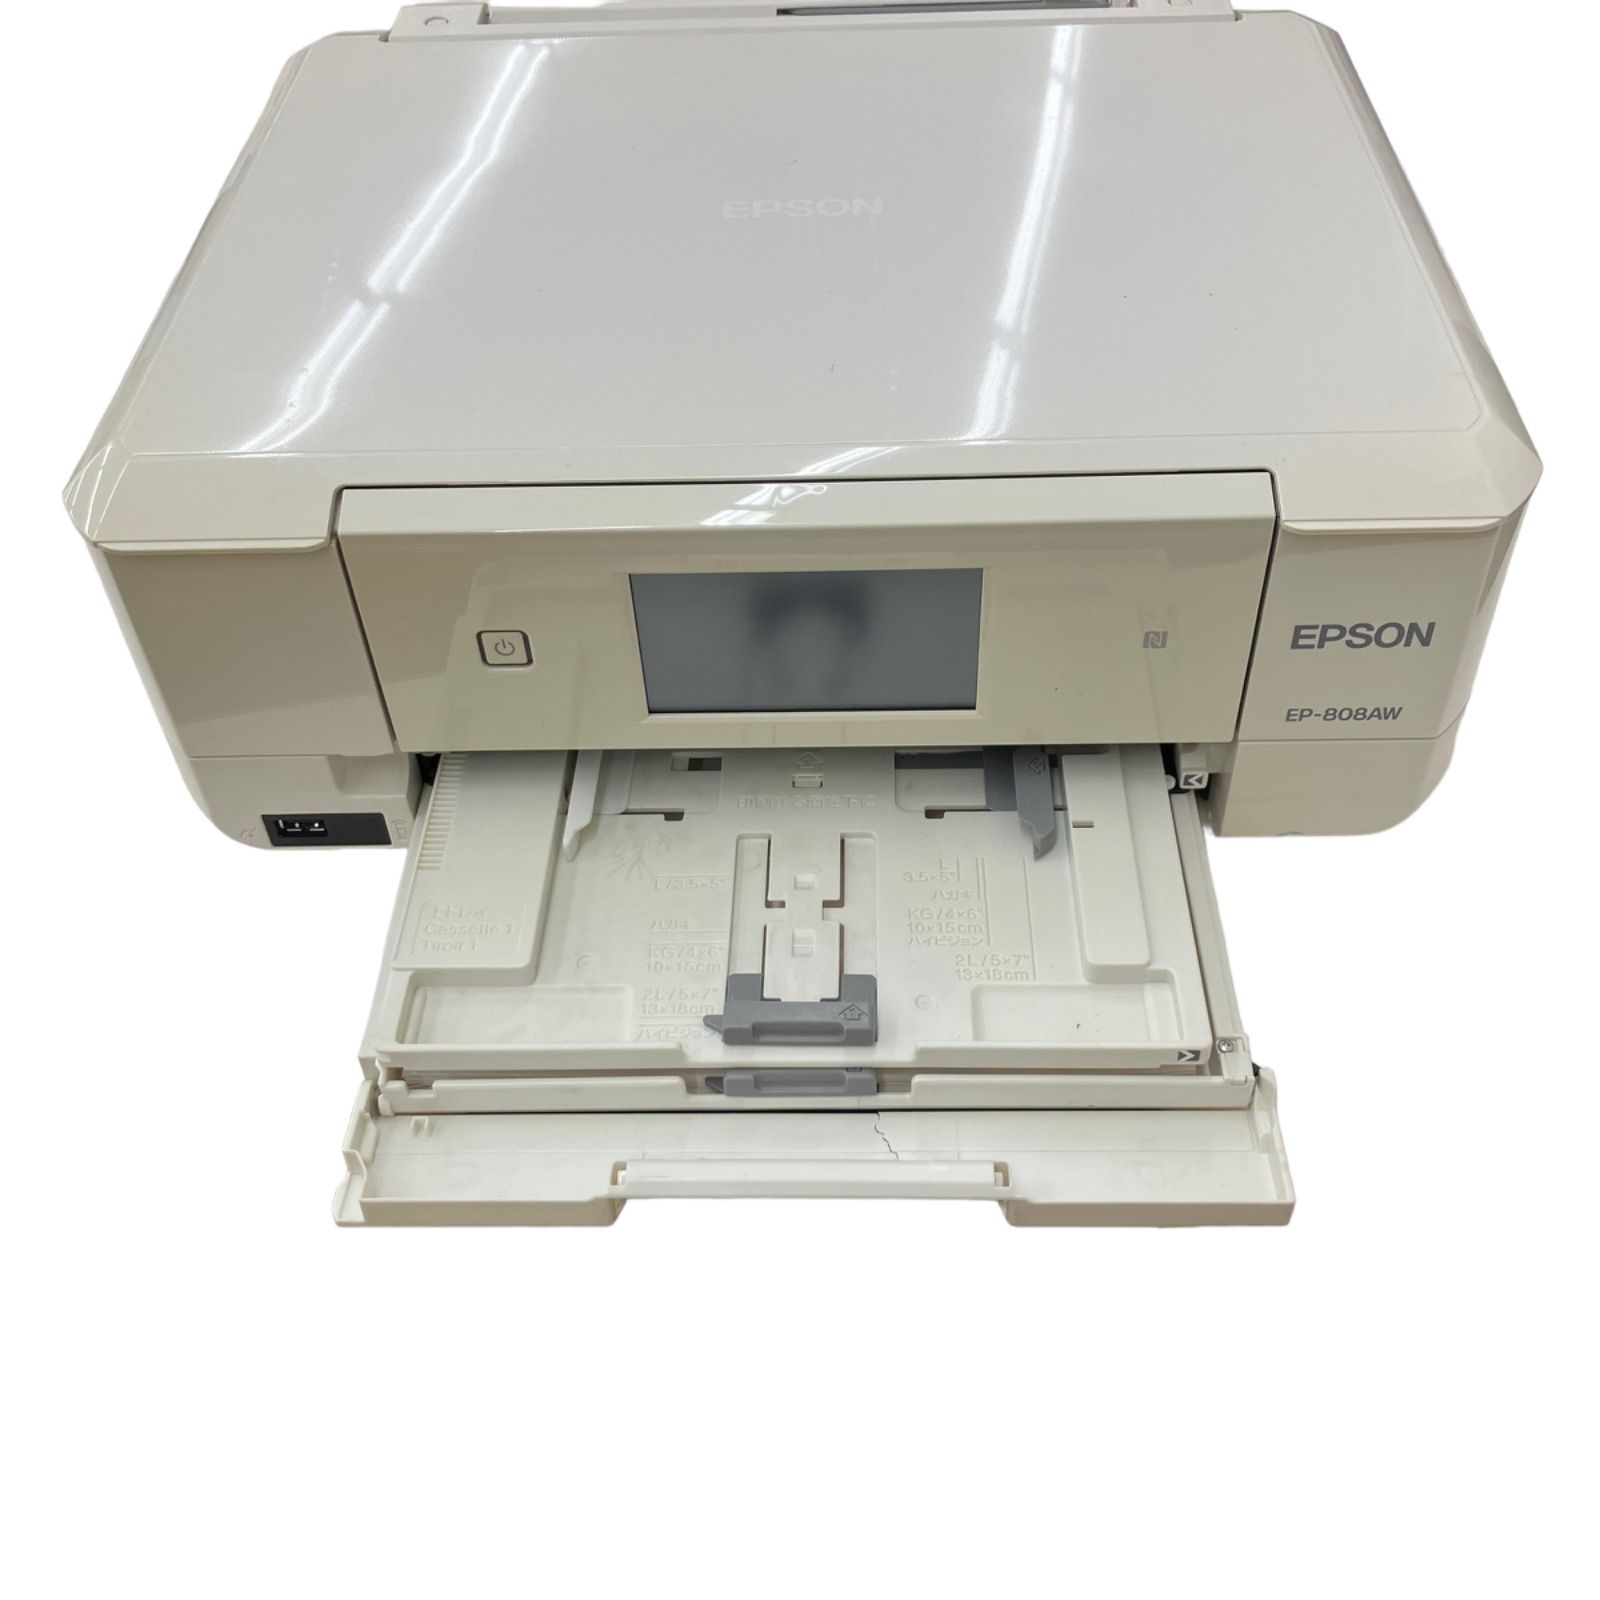 エプソン プリンター インクジェット複合機 カラリオ EP-808AW ホワイトPC周辺機器